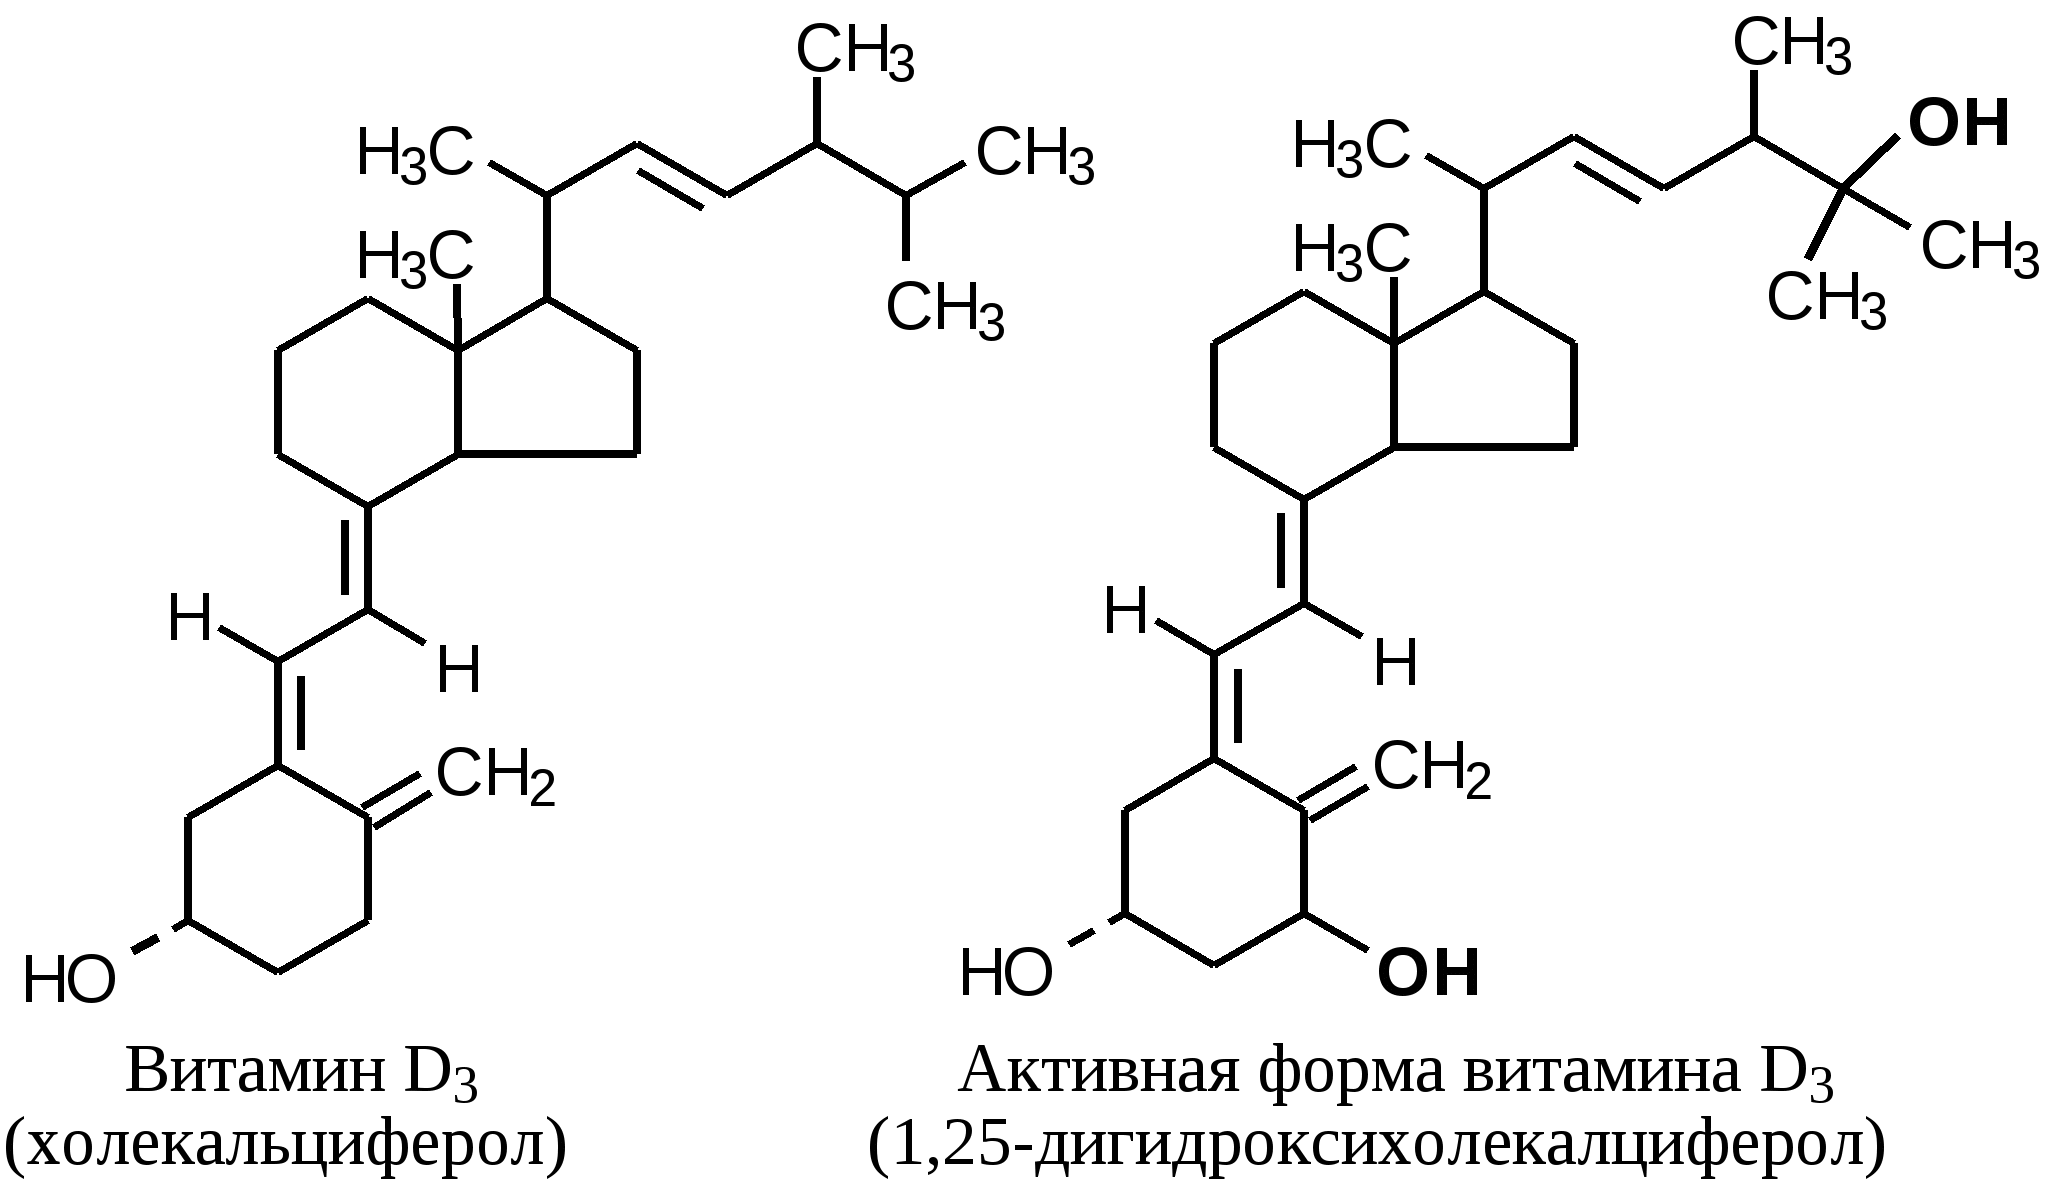 Лучшая форма д3. Формула активной формы витамина д3. Активная форма витамина д формула. Формулу активной формы витамина д3 -1,25-диоксихолекальциферола. Структура витамина d3.